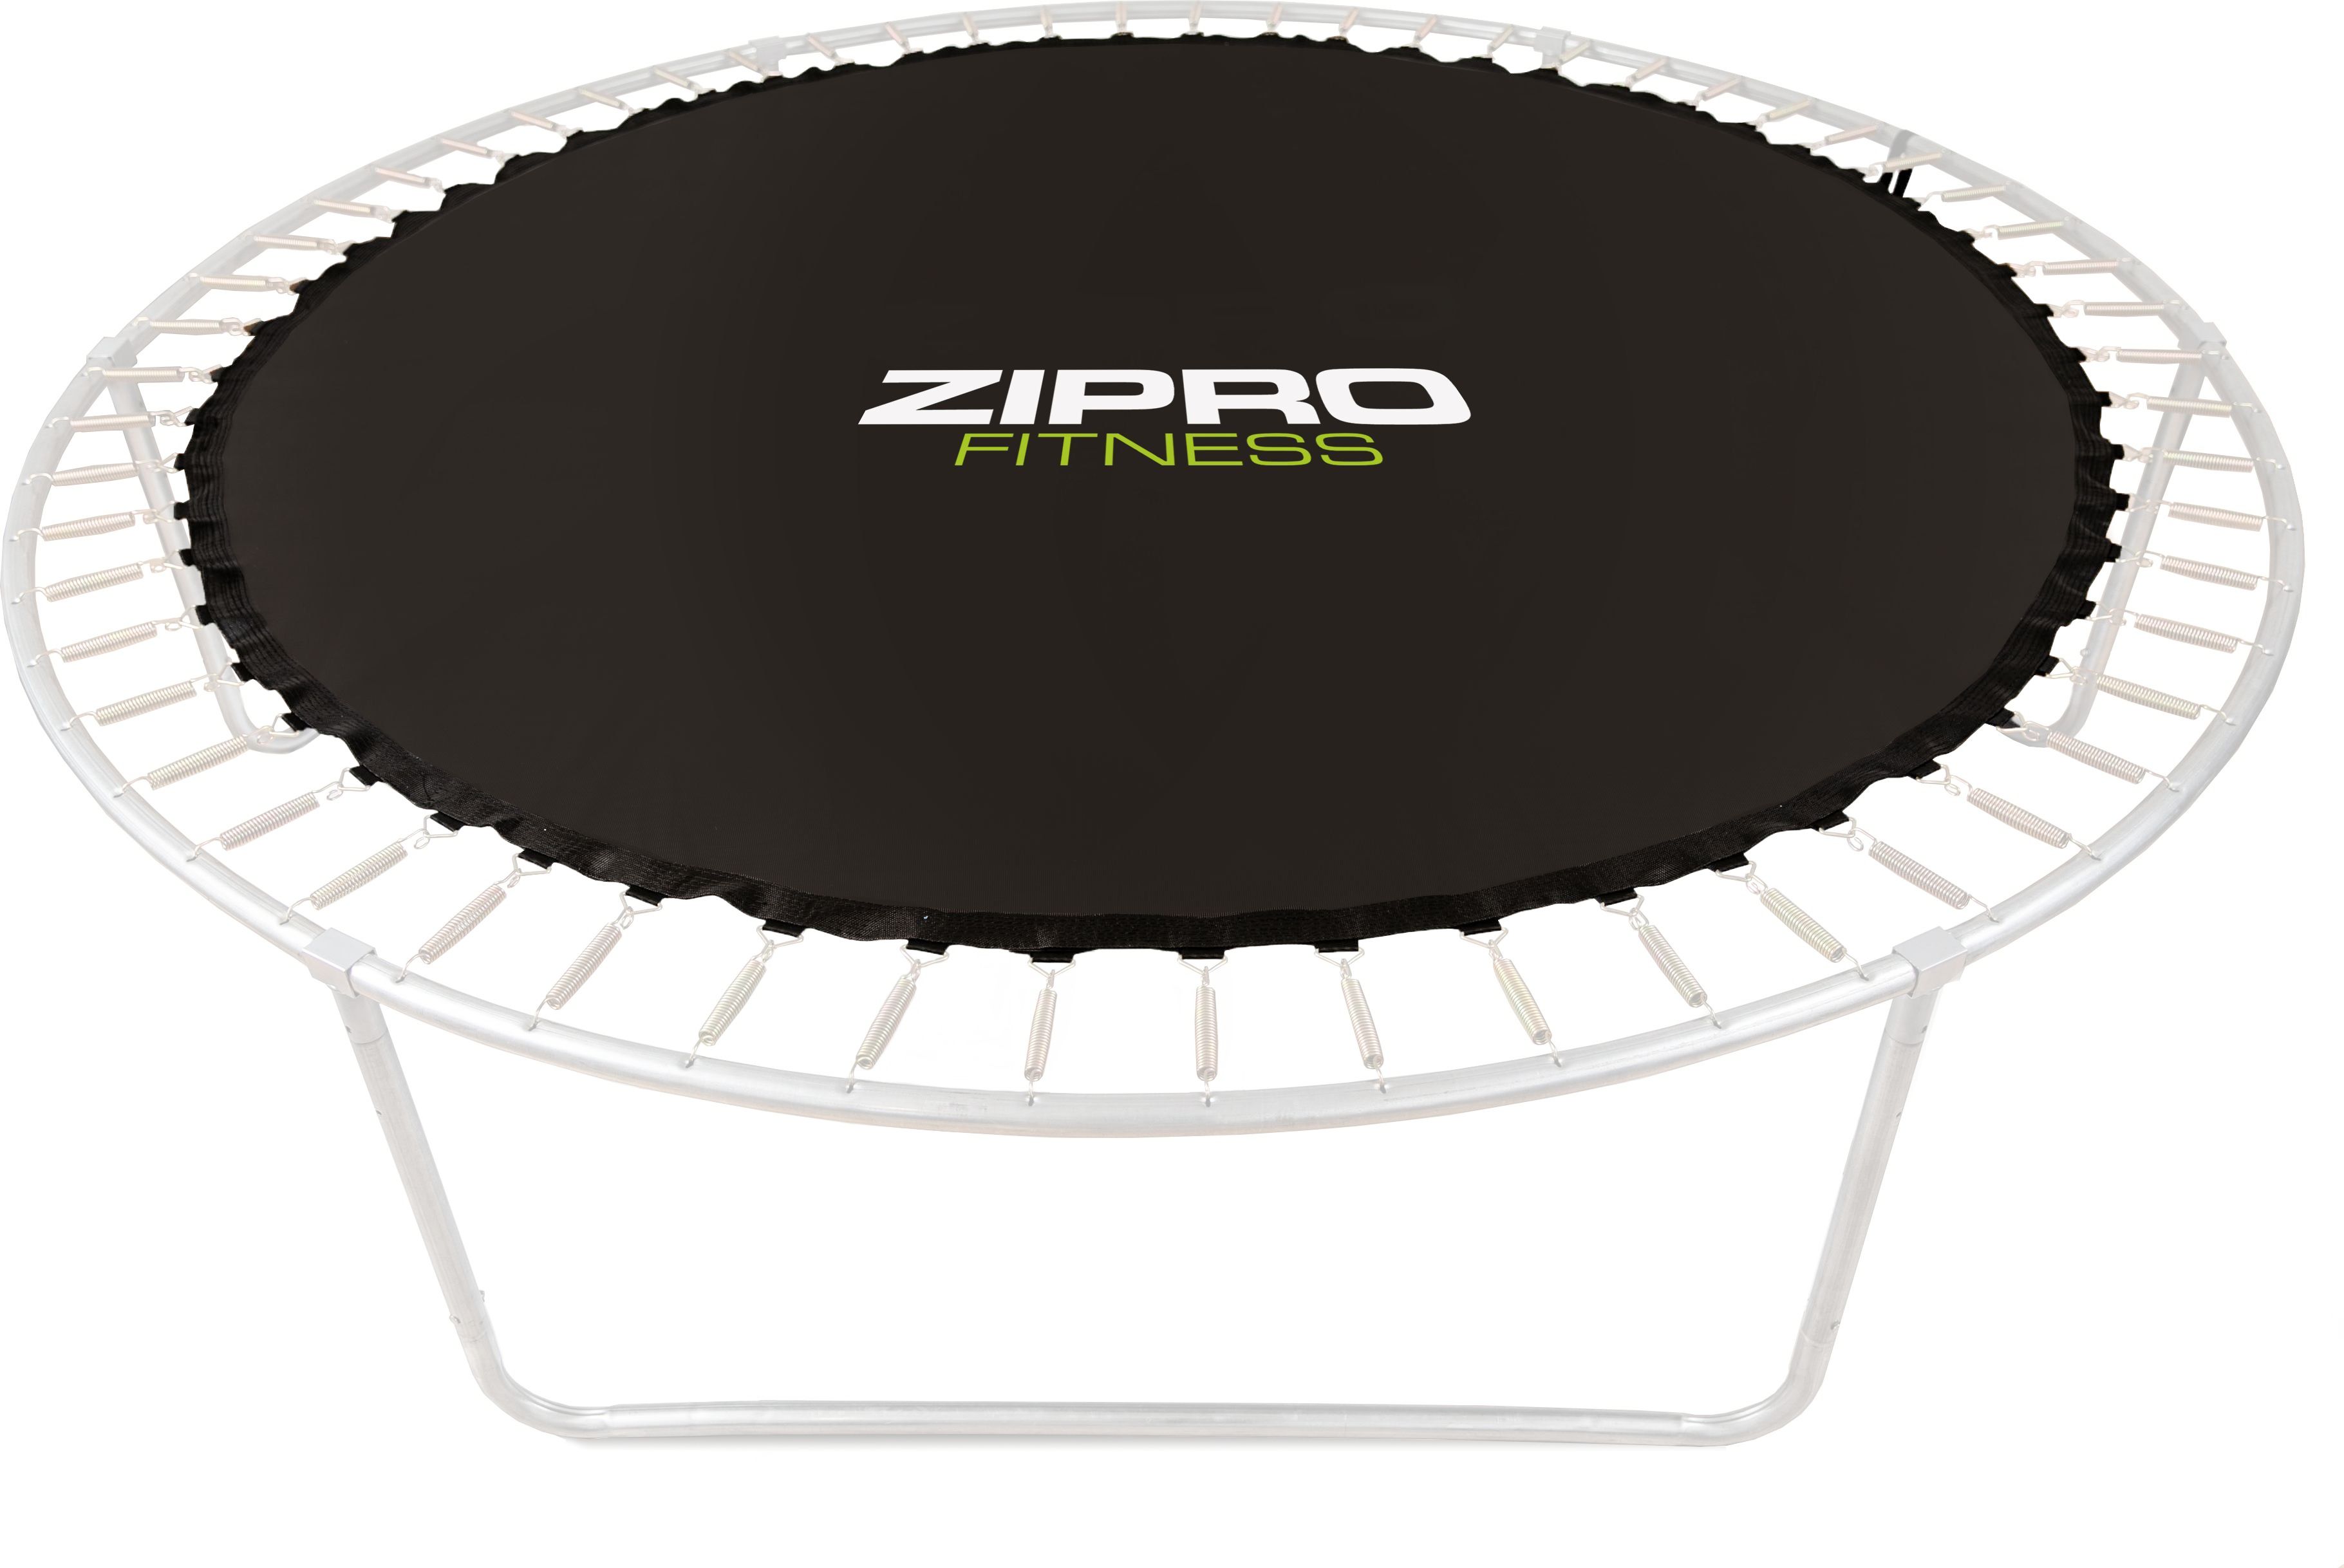 Zipro Batut - mata do skakania do trampoliny 12FT/374cm 5825365